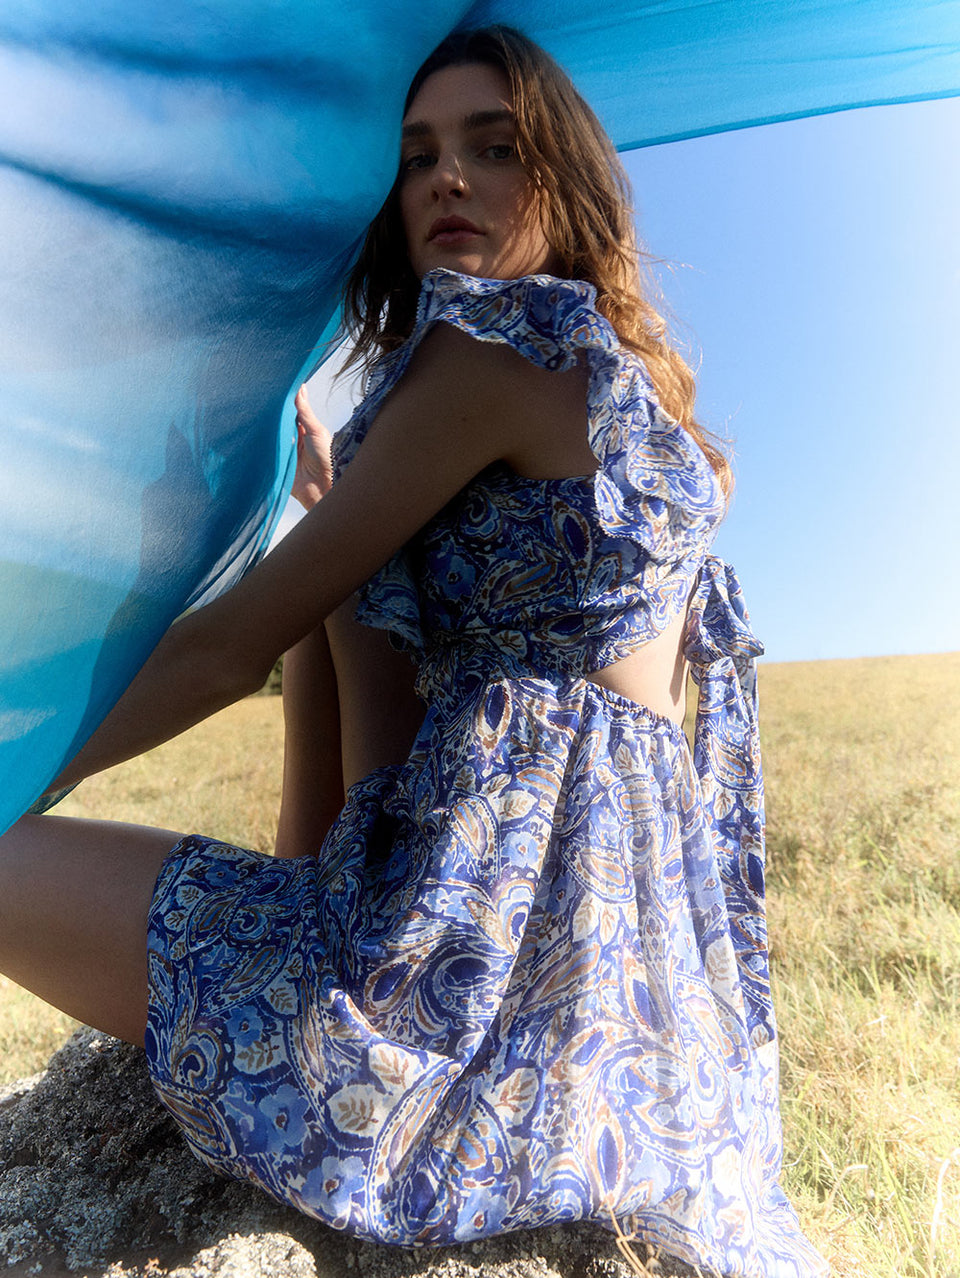 Dakota Ruffle Mini Dress KIVARI | Model wears blue paisley mini dress campaign